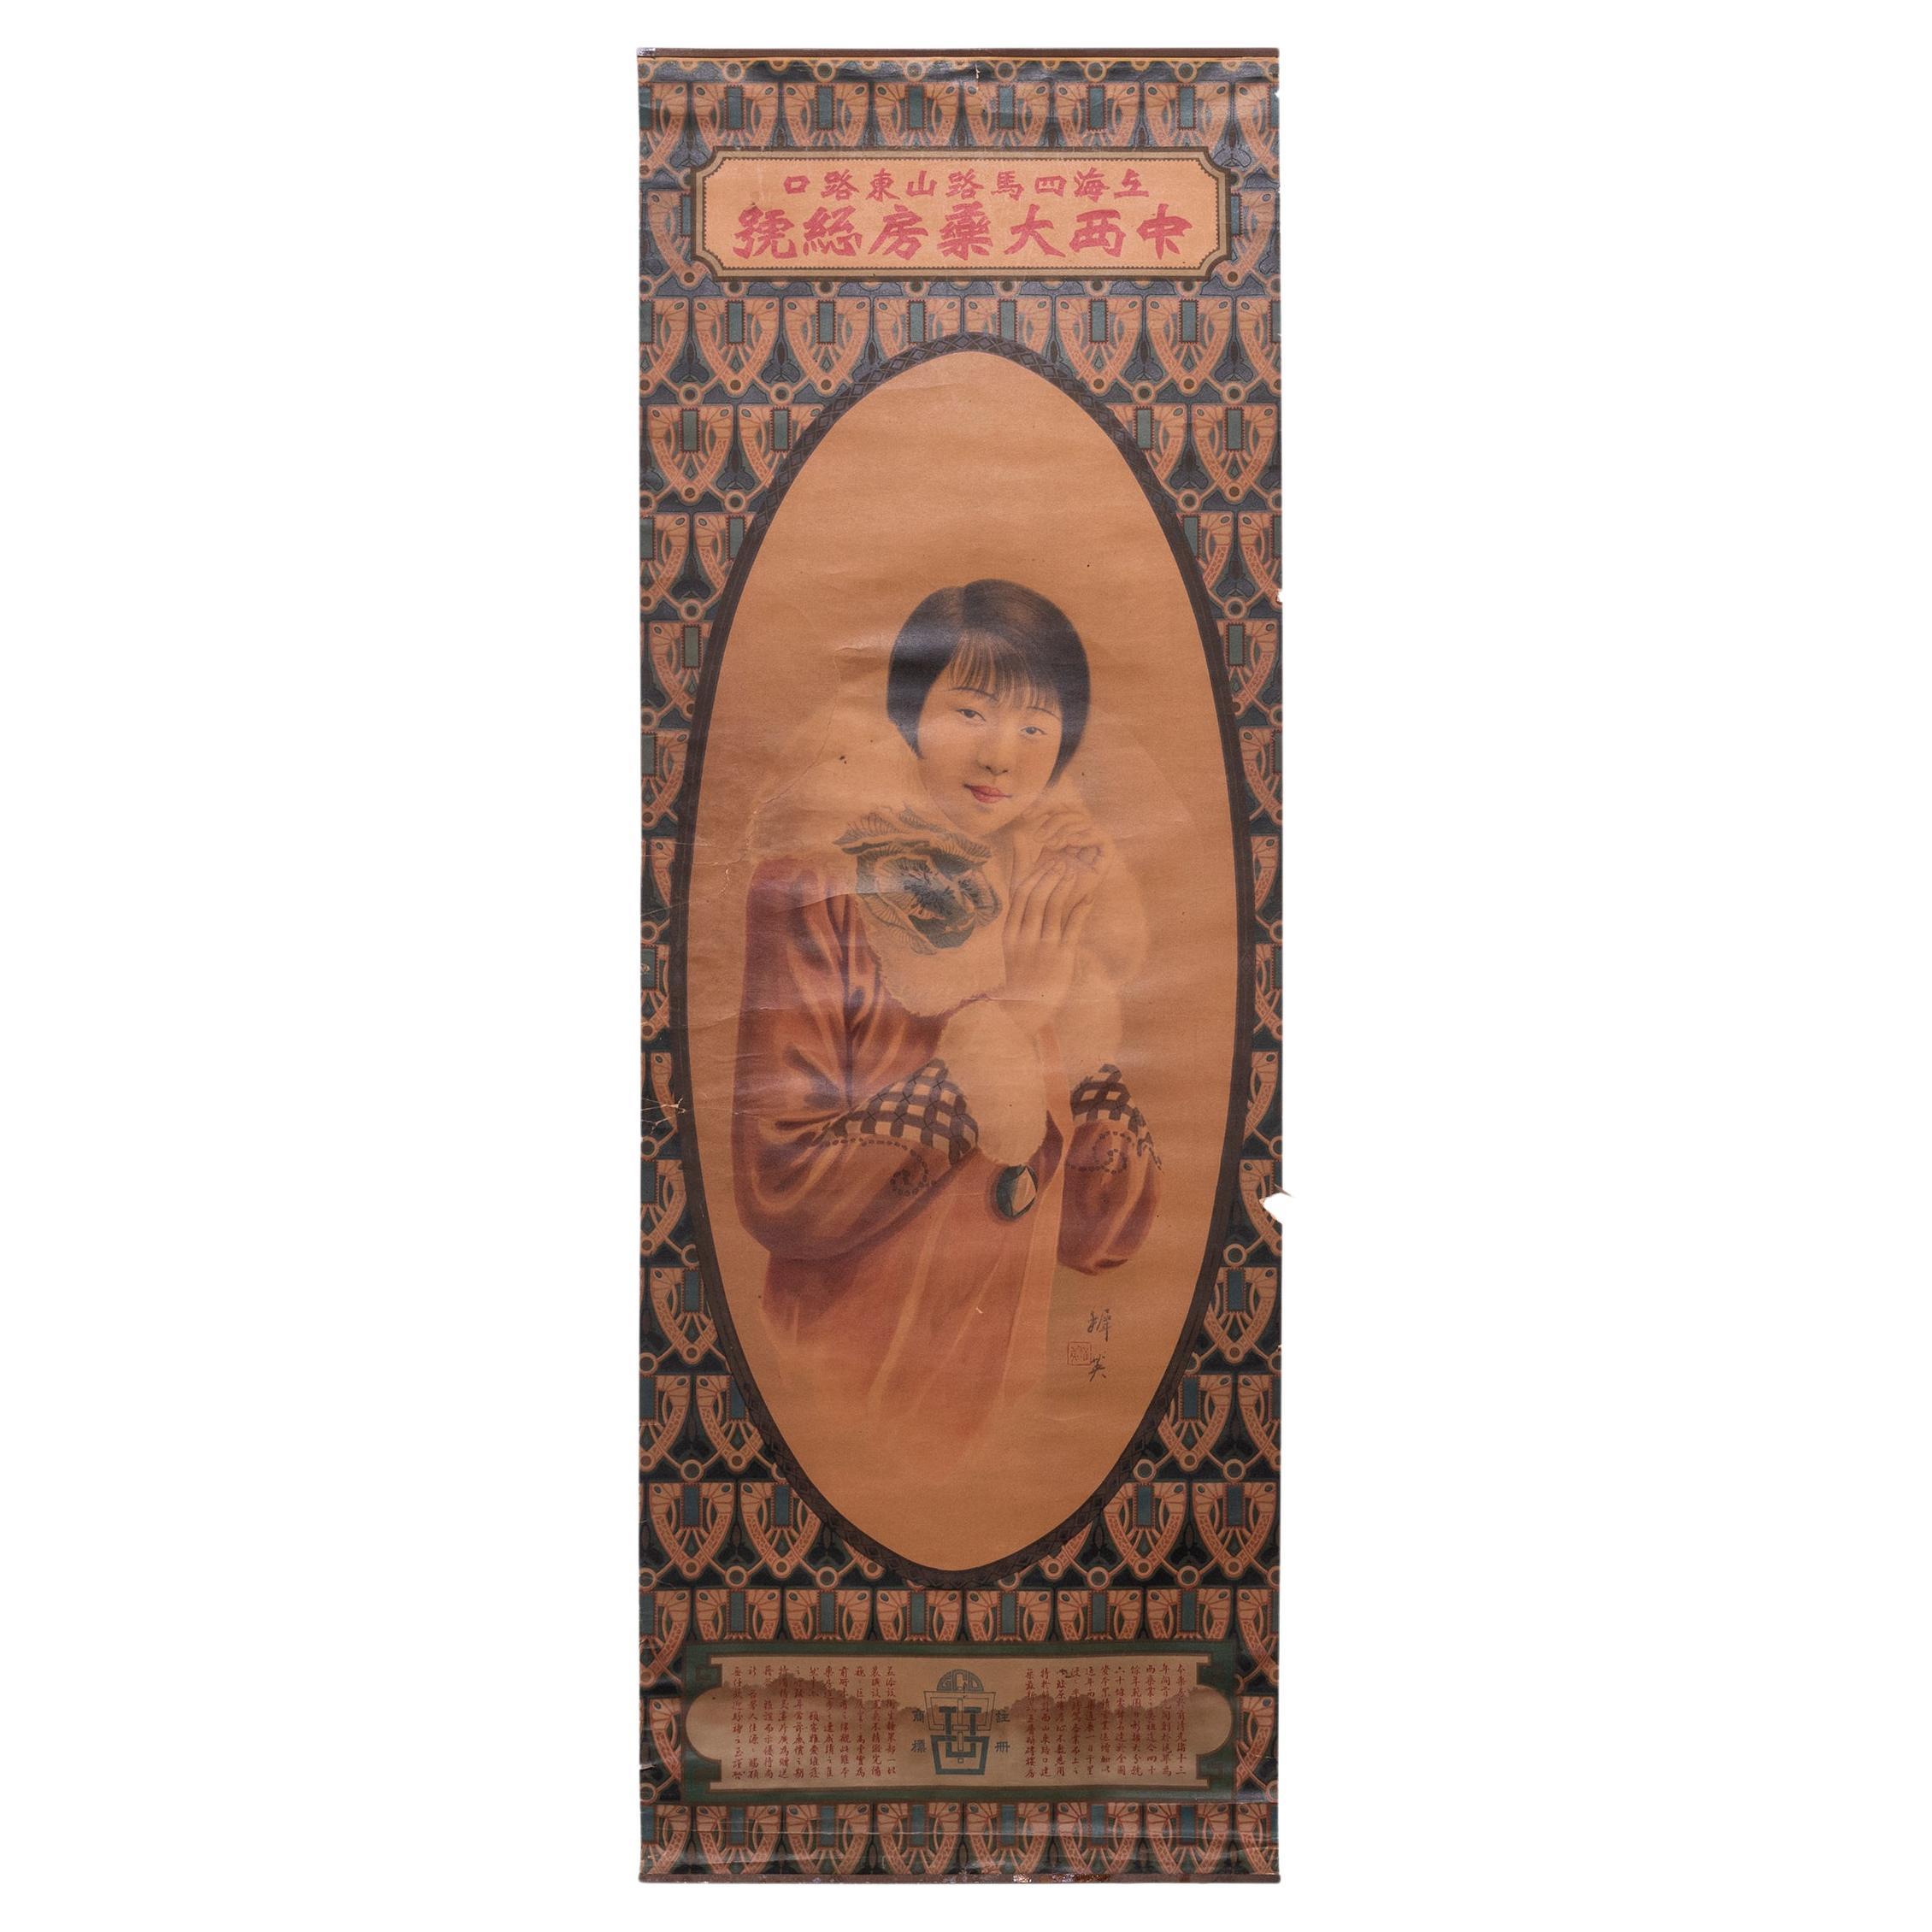 Chinesisches Deko Medizin, Werbeplakat, ca. 1920